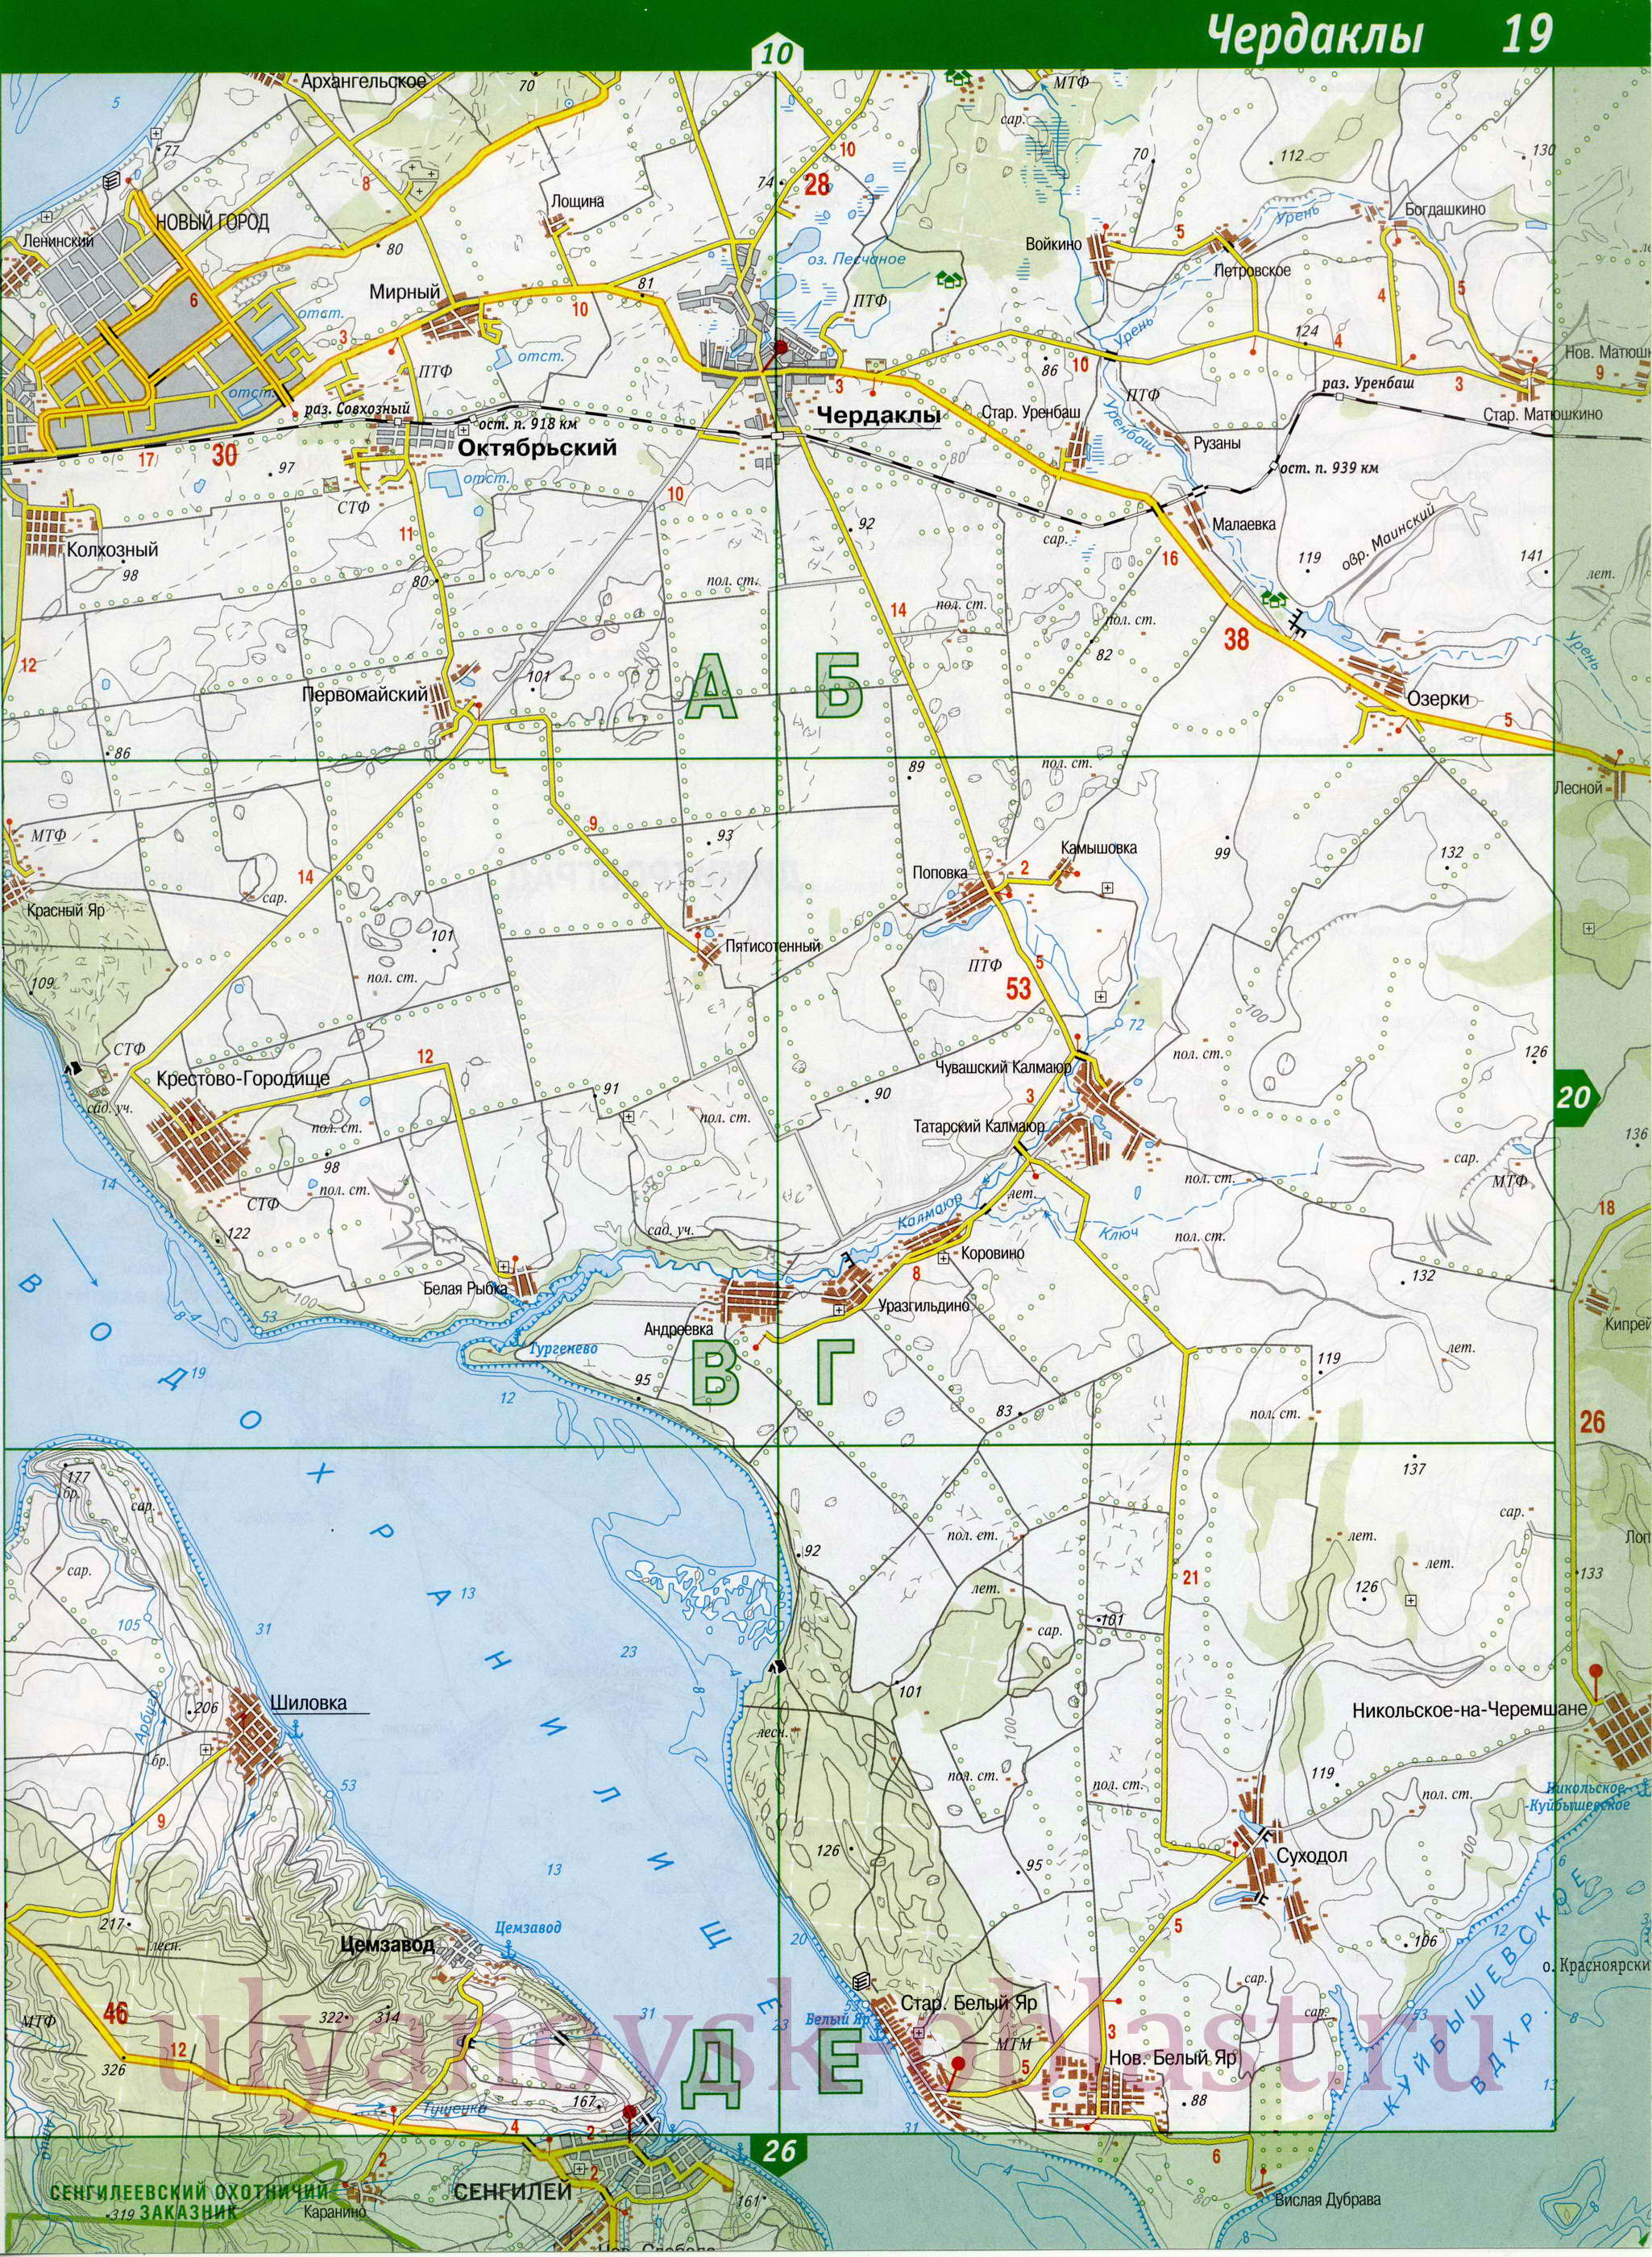 Автомобильная карта Ульяновска. Подробная карта автомобильных дорог Ульяновска, B0 - 